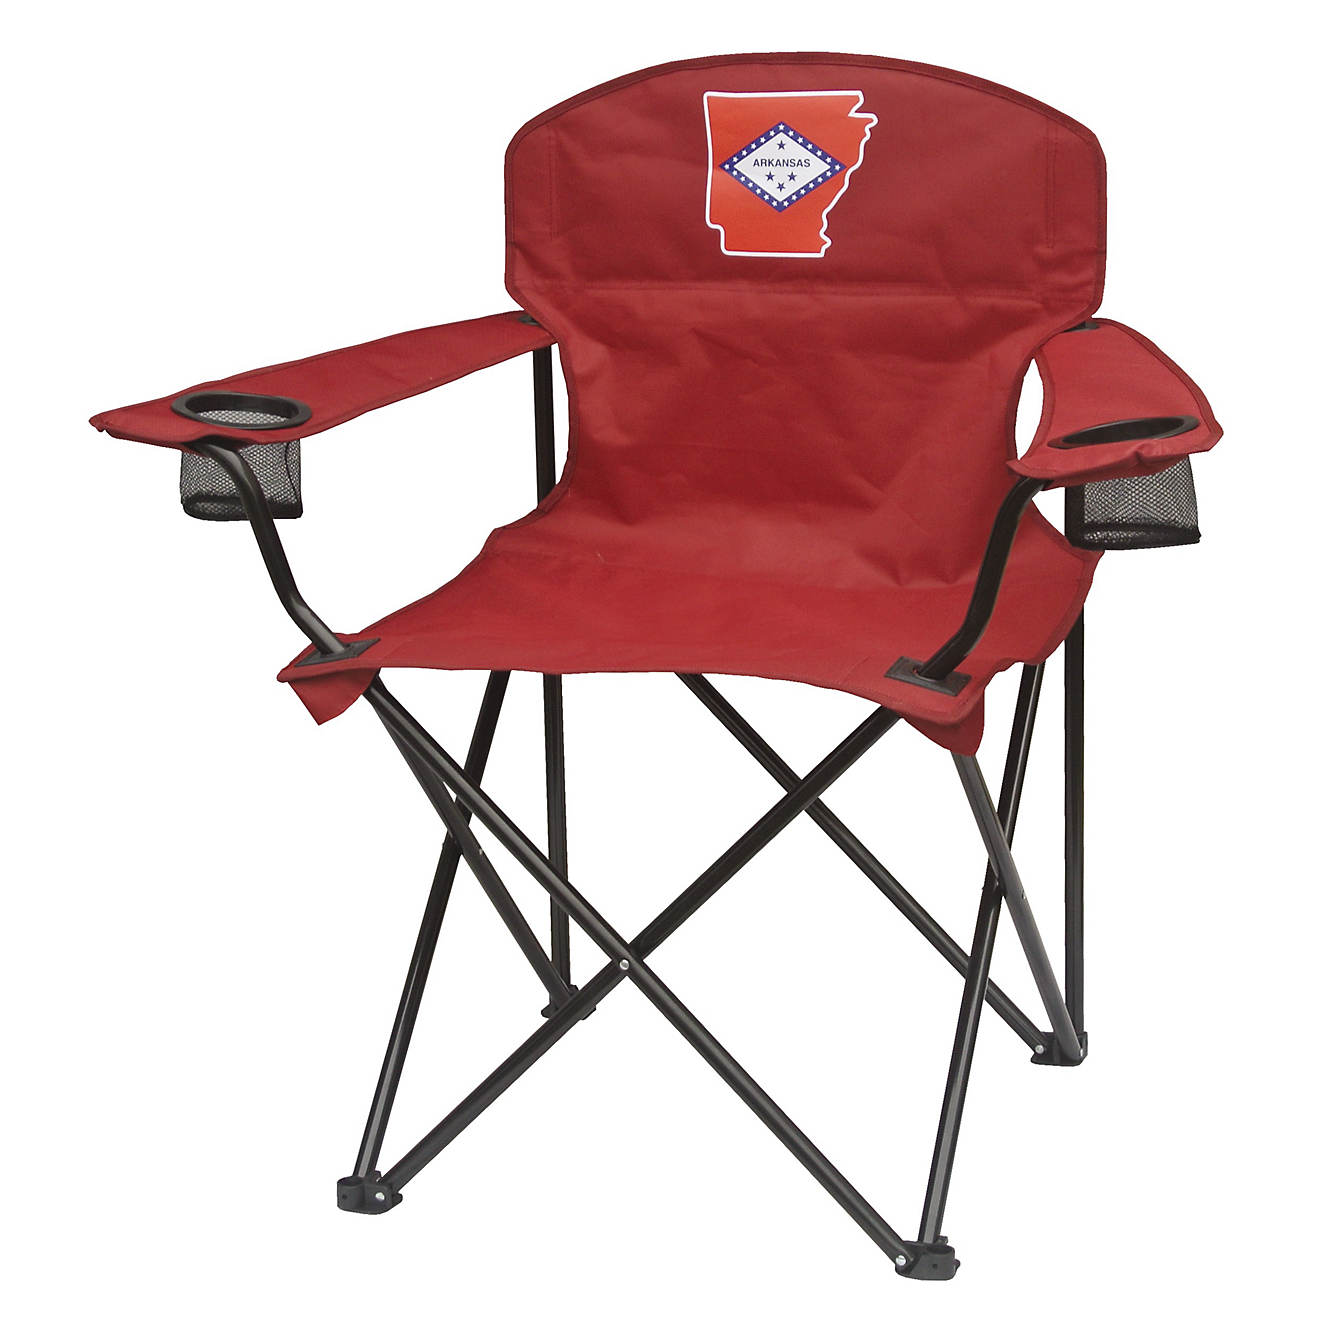 Academy Sports + Outdoors Arkansas Folding Chair | Academy